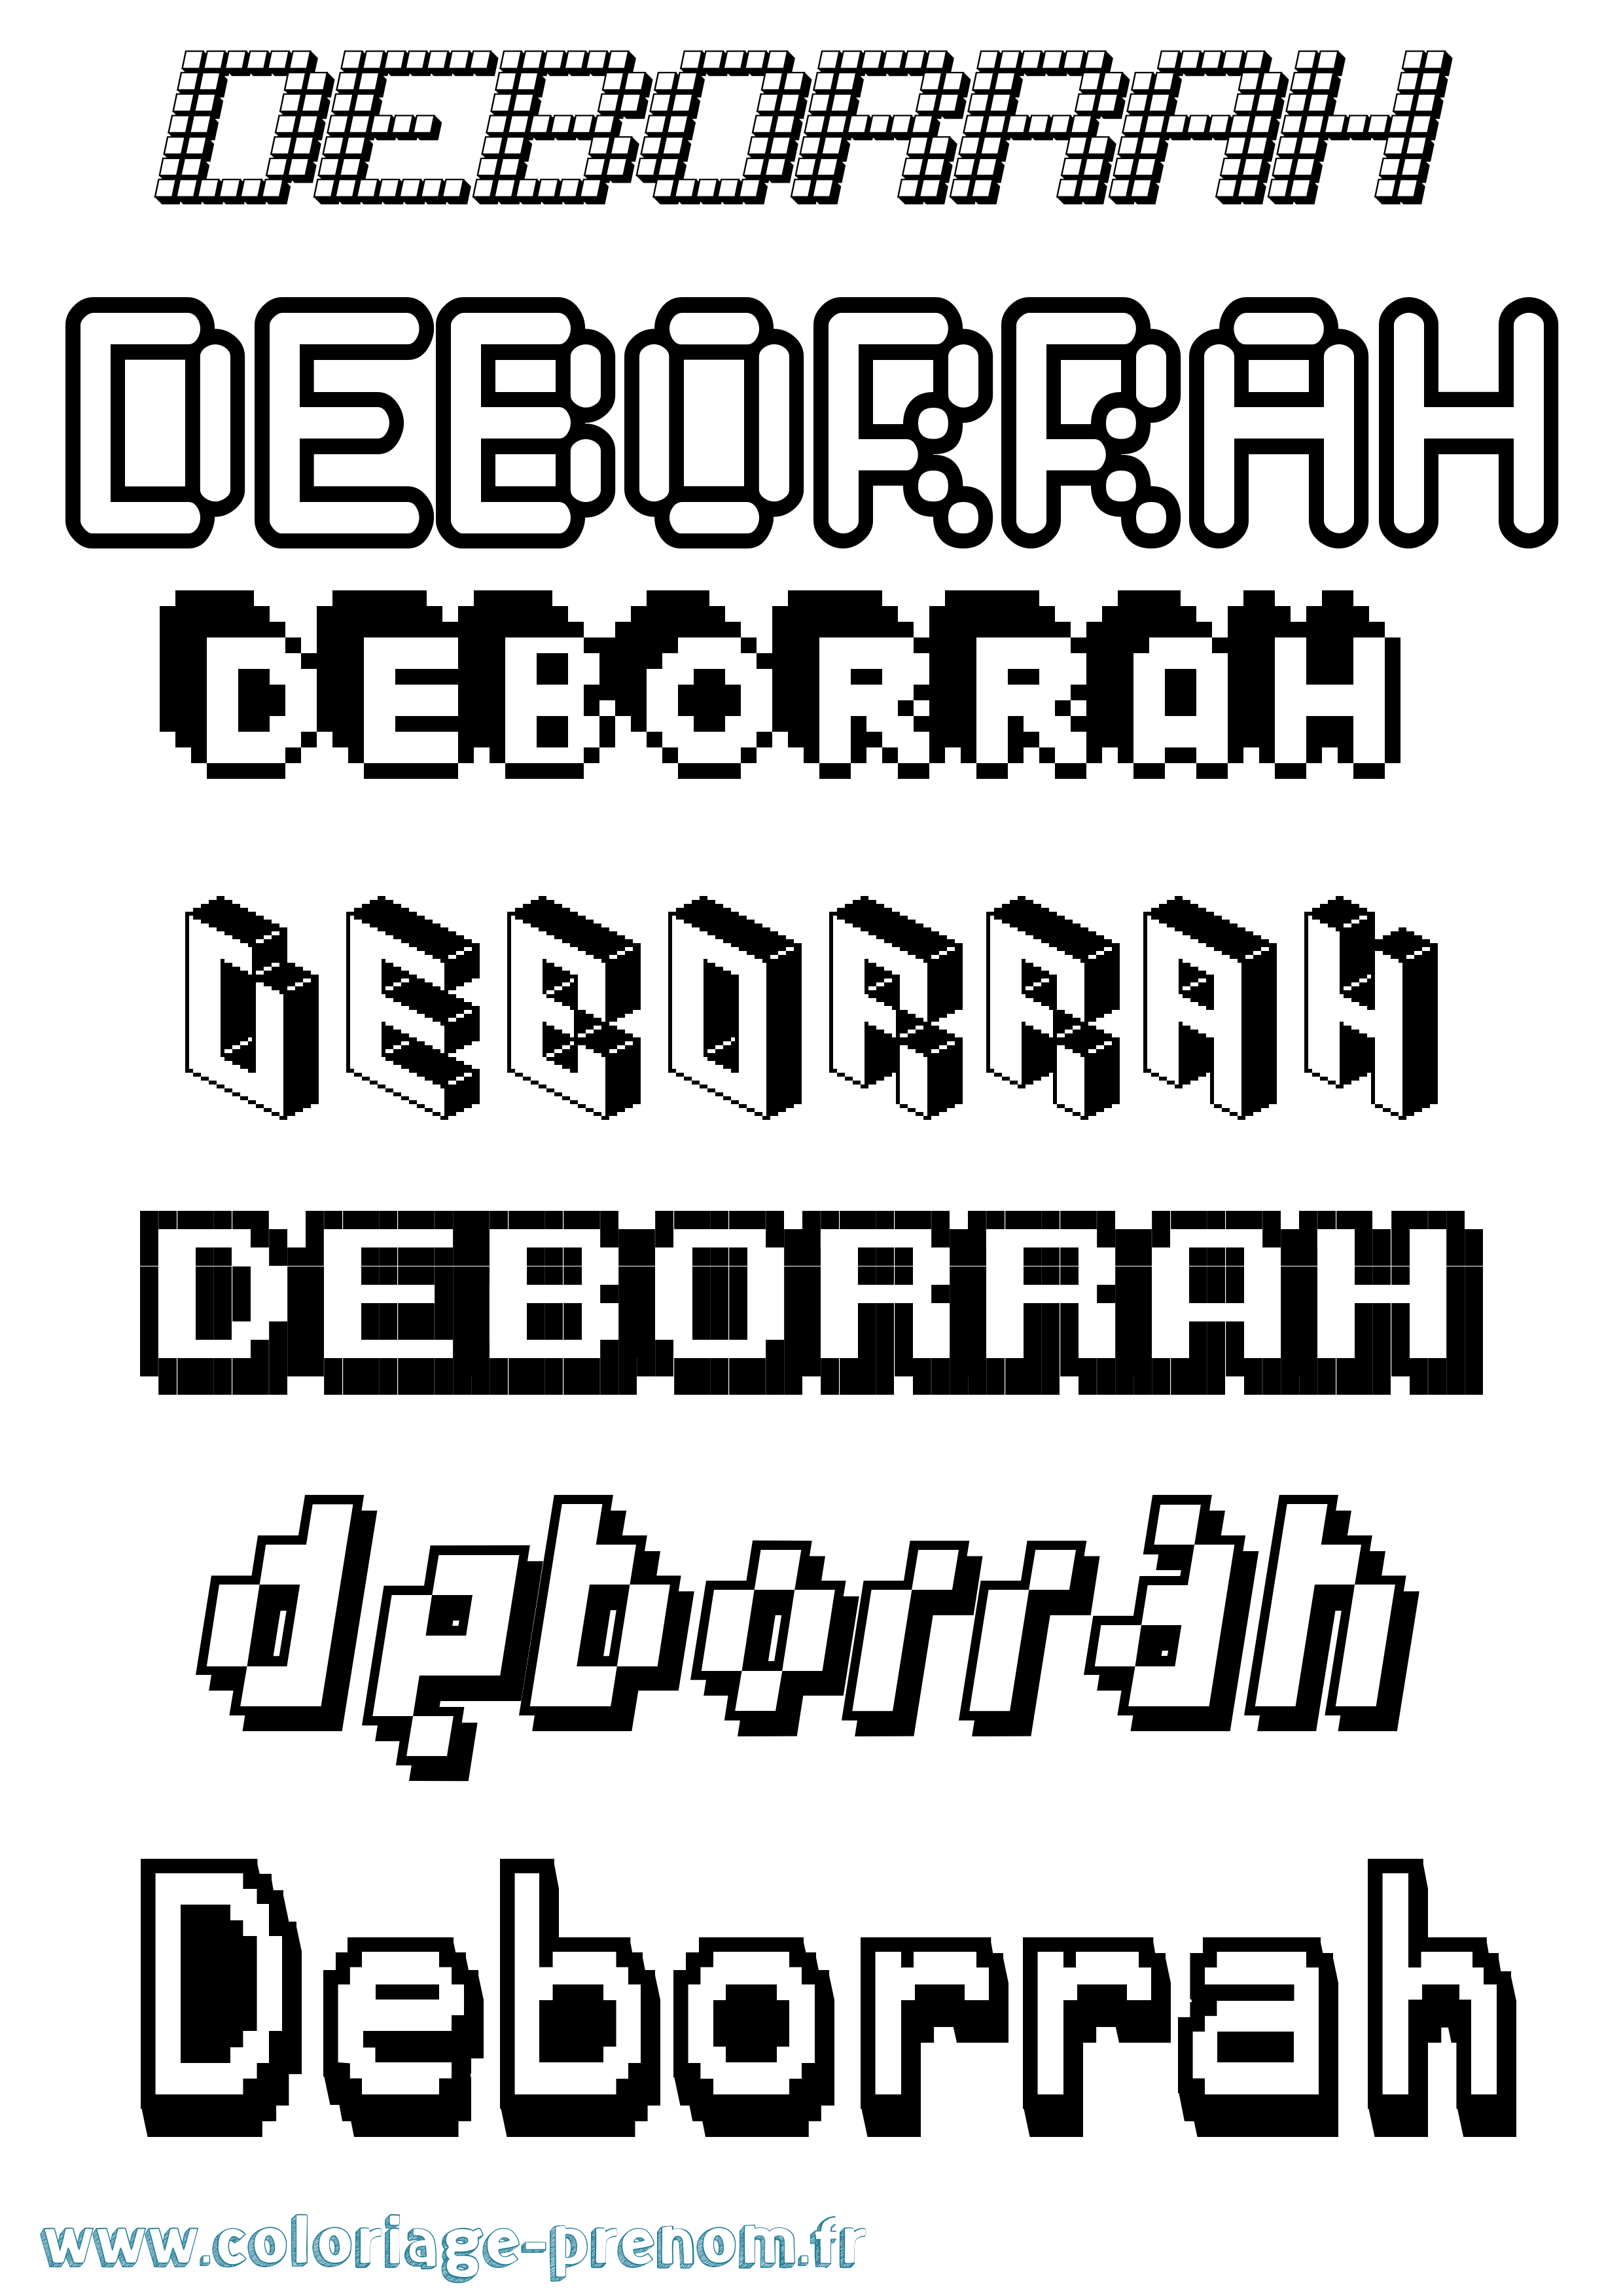 Coloriage prénom Deborrah Pixel